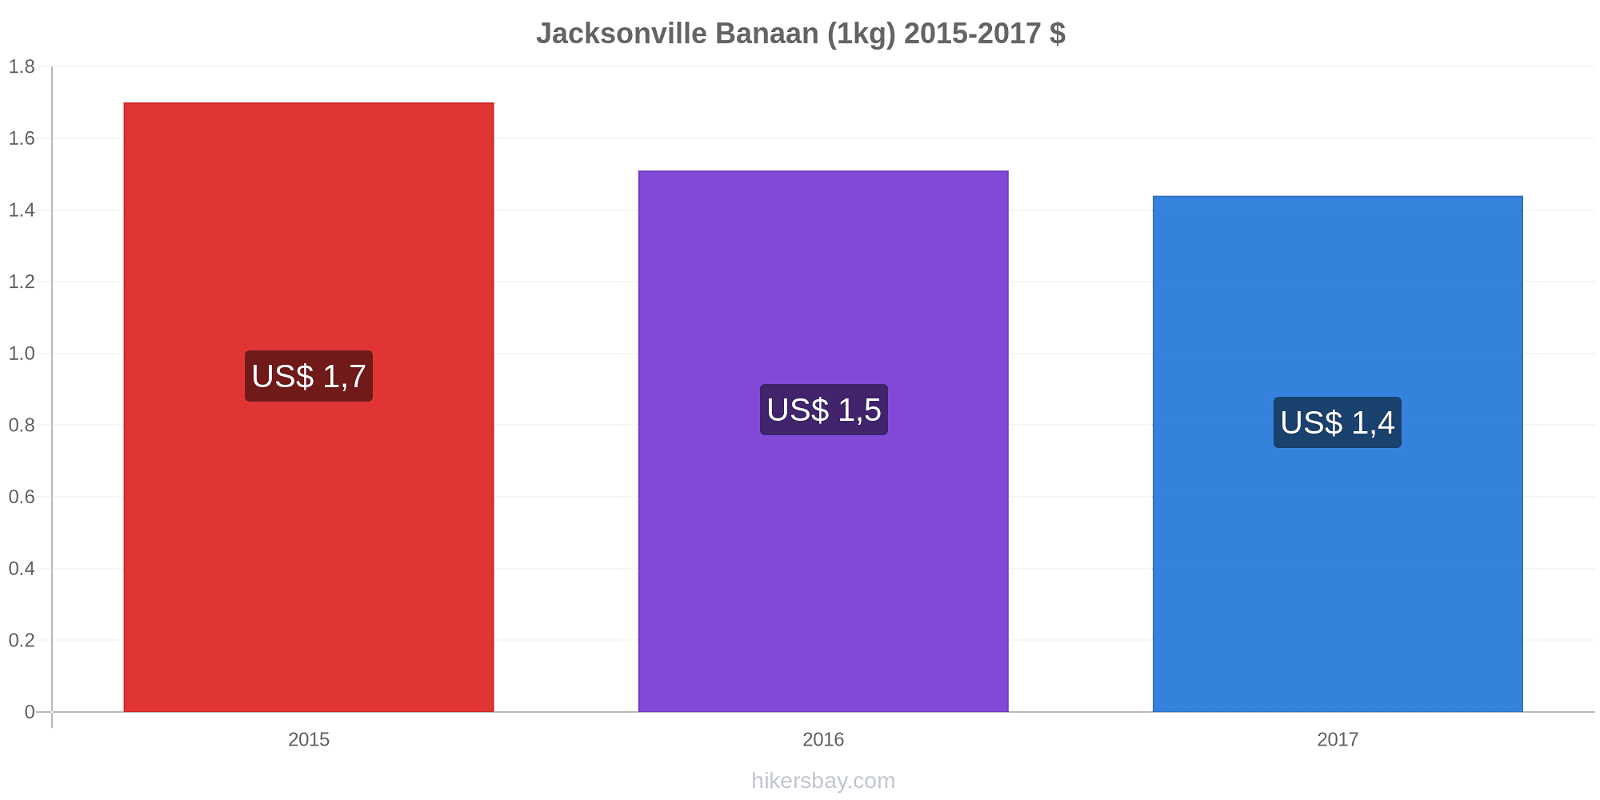 Jacksonville prijswijzigingen Banaan (1kg) hikersbay.com